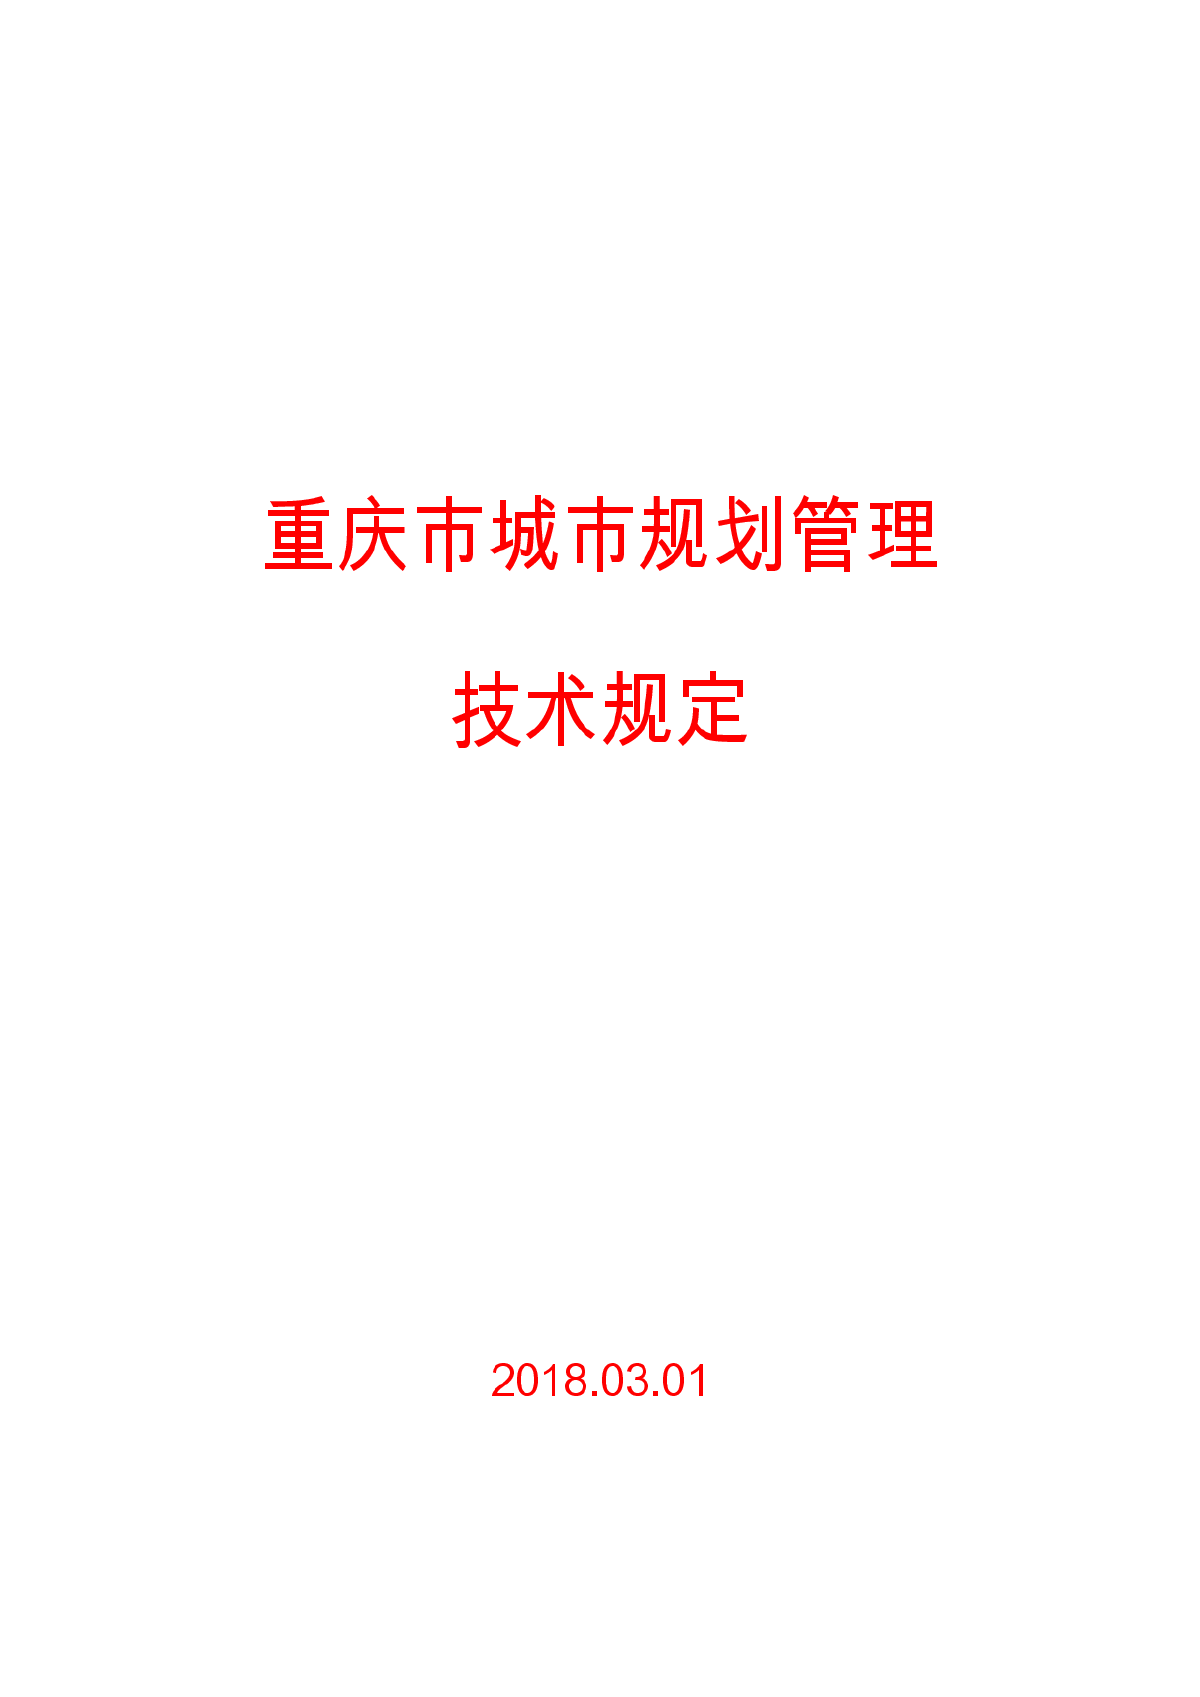 《重庆市城市规划管理技术规定》2018